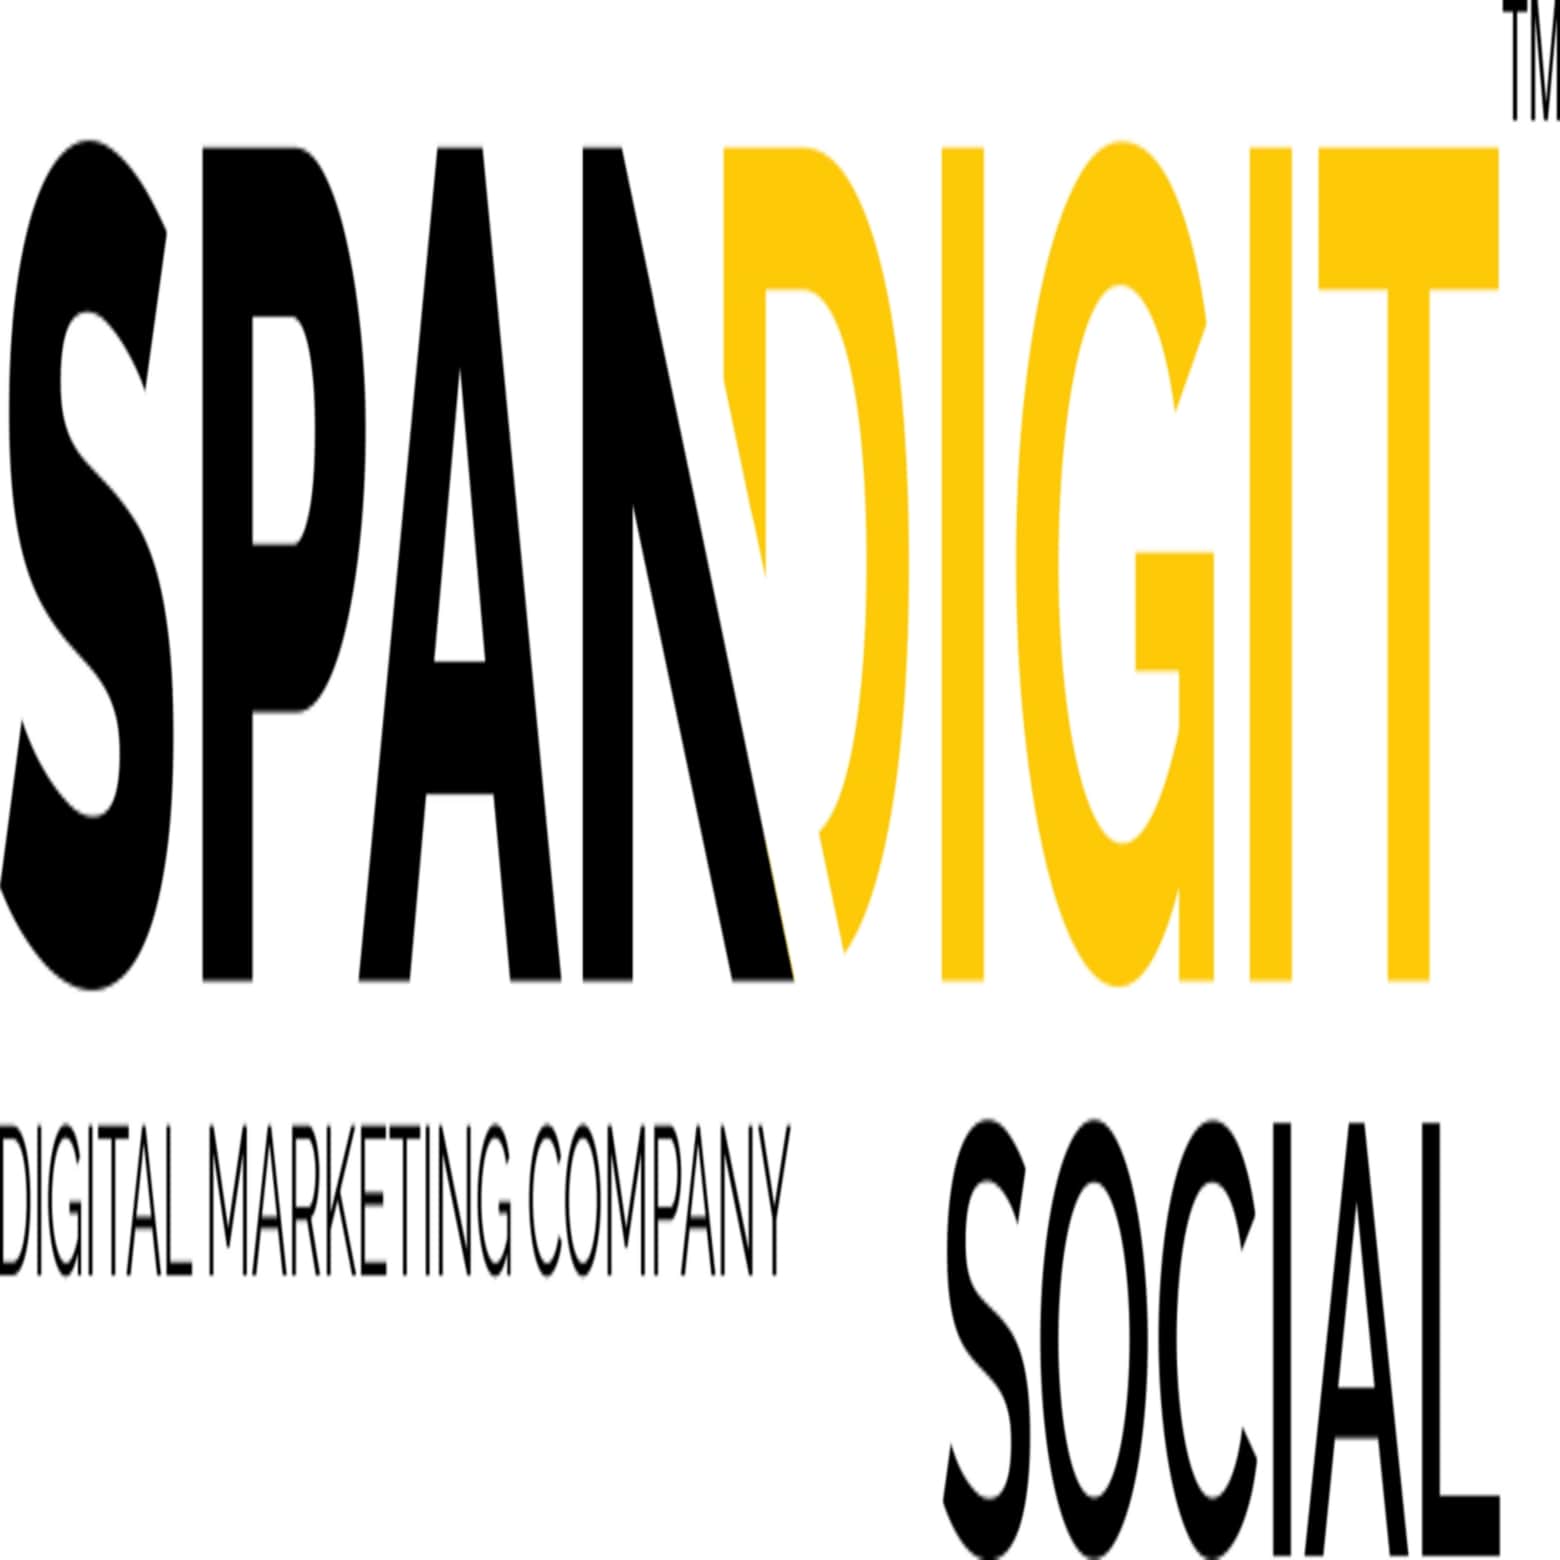 spandigit-logo_1100x1100_1_1600x1600_1560x1560